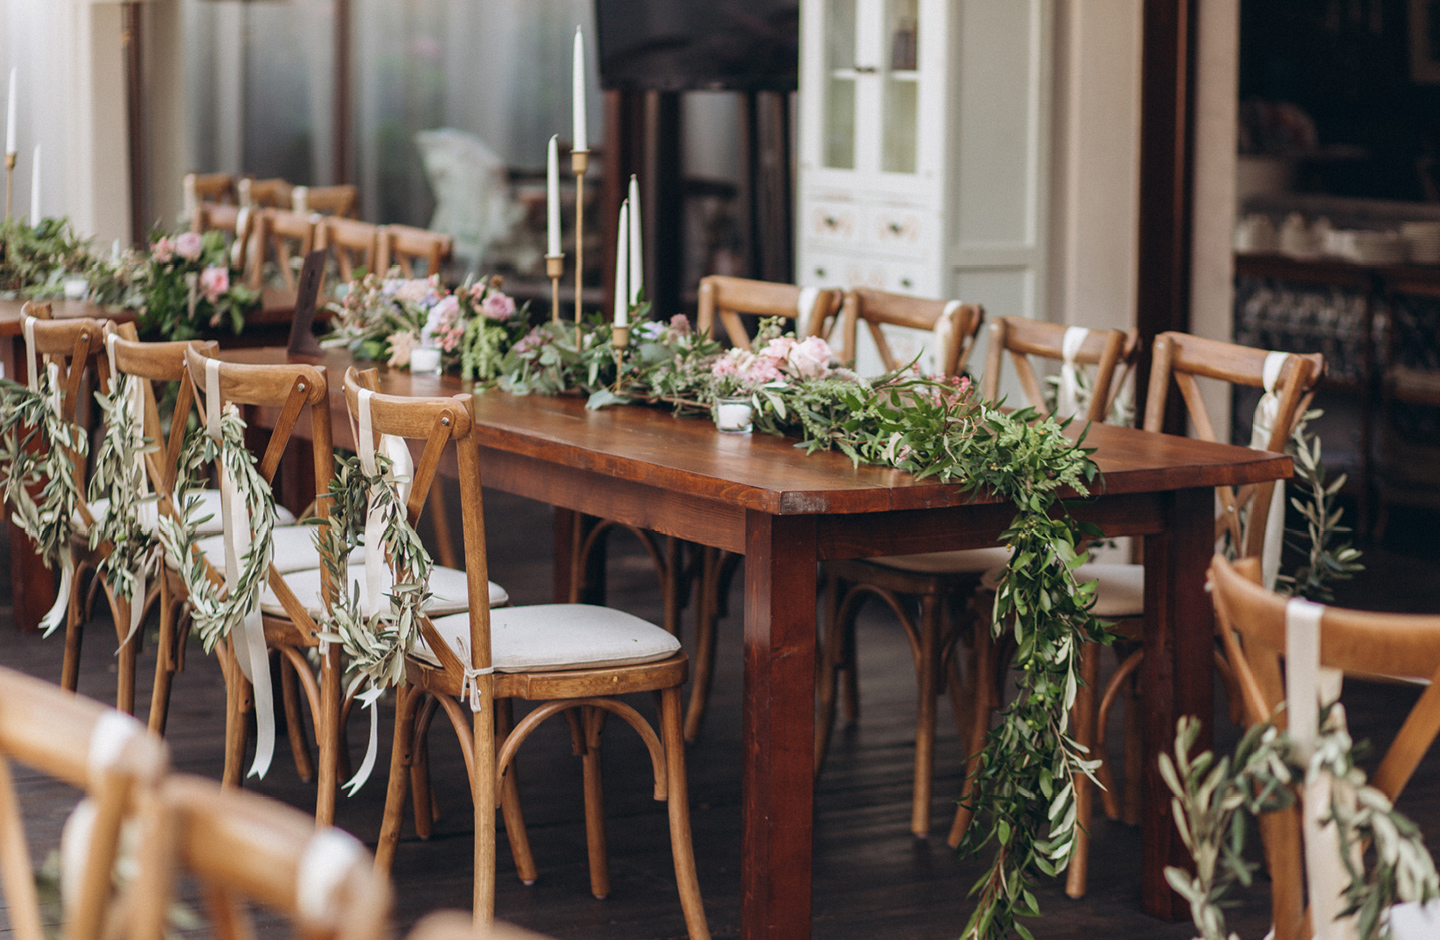 Holztisch ist minimalistisch zur Hochzeit mit grünen Zweigen und rosa Pfingstrosen dekoriert.